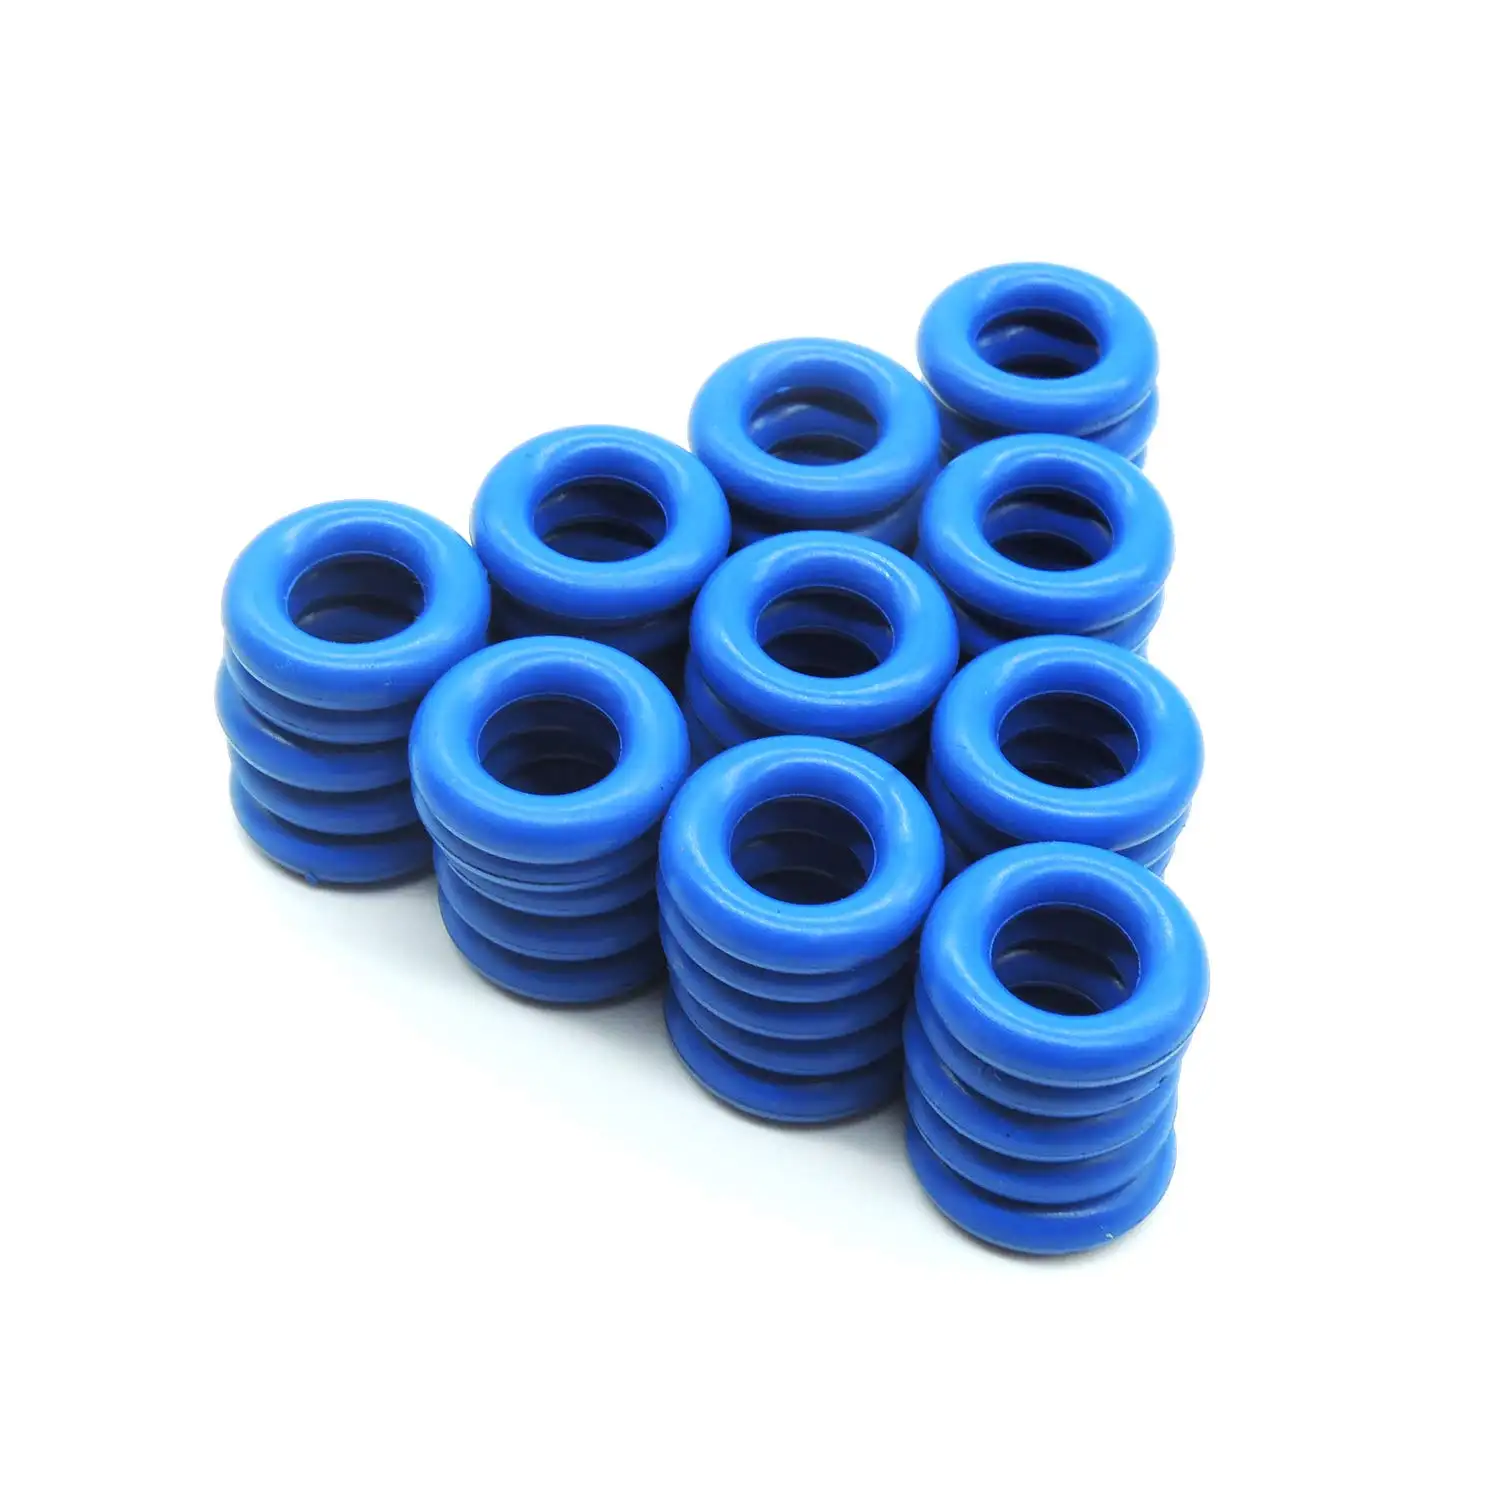 HiSport yakıt enjektörü o-ringler seti- [7.52mm X 3.53mm] mavi evrensel tamir takımları [50 adet]